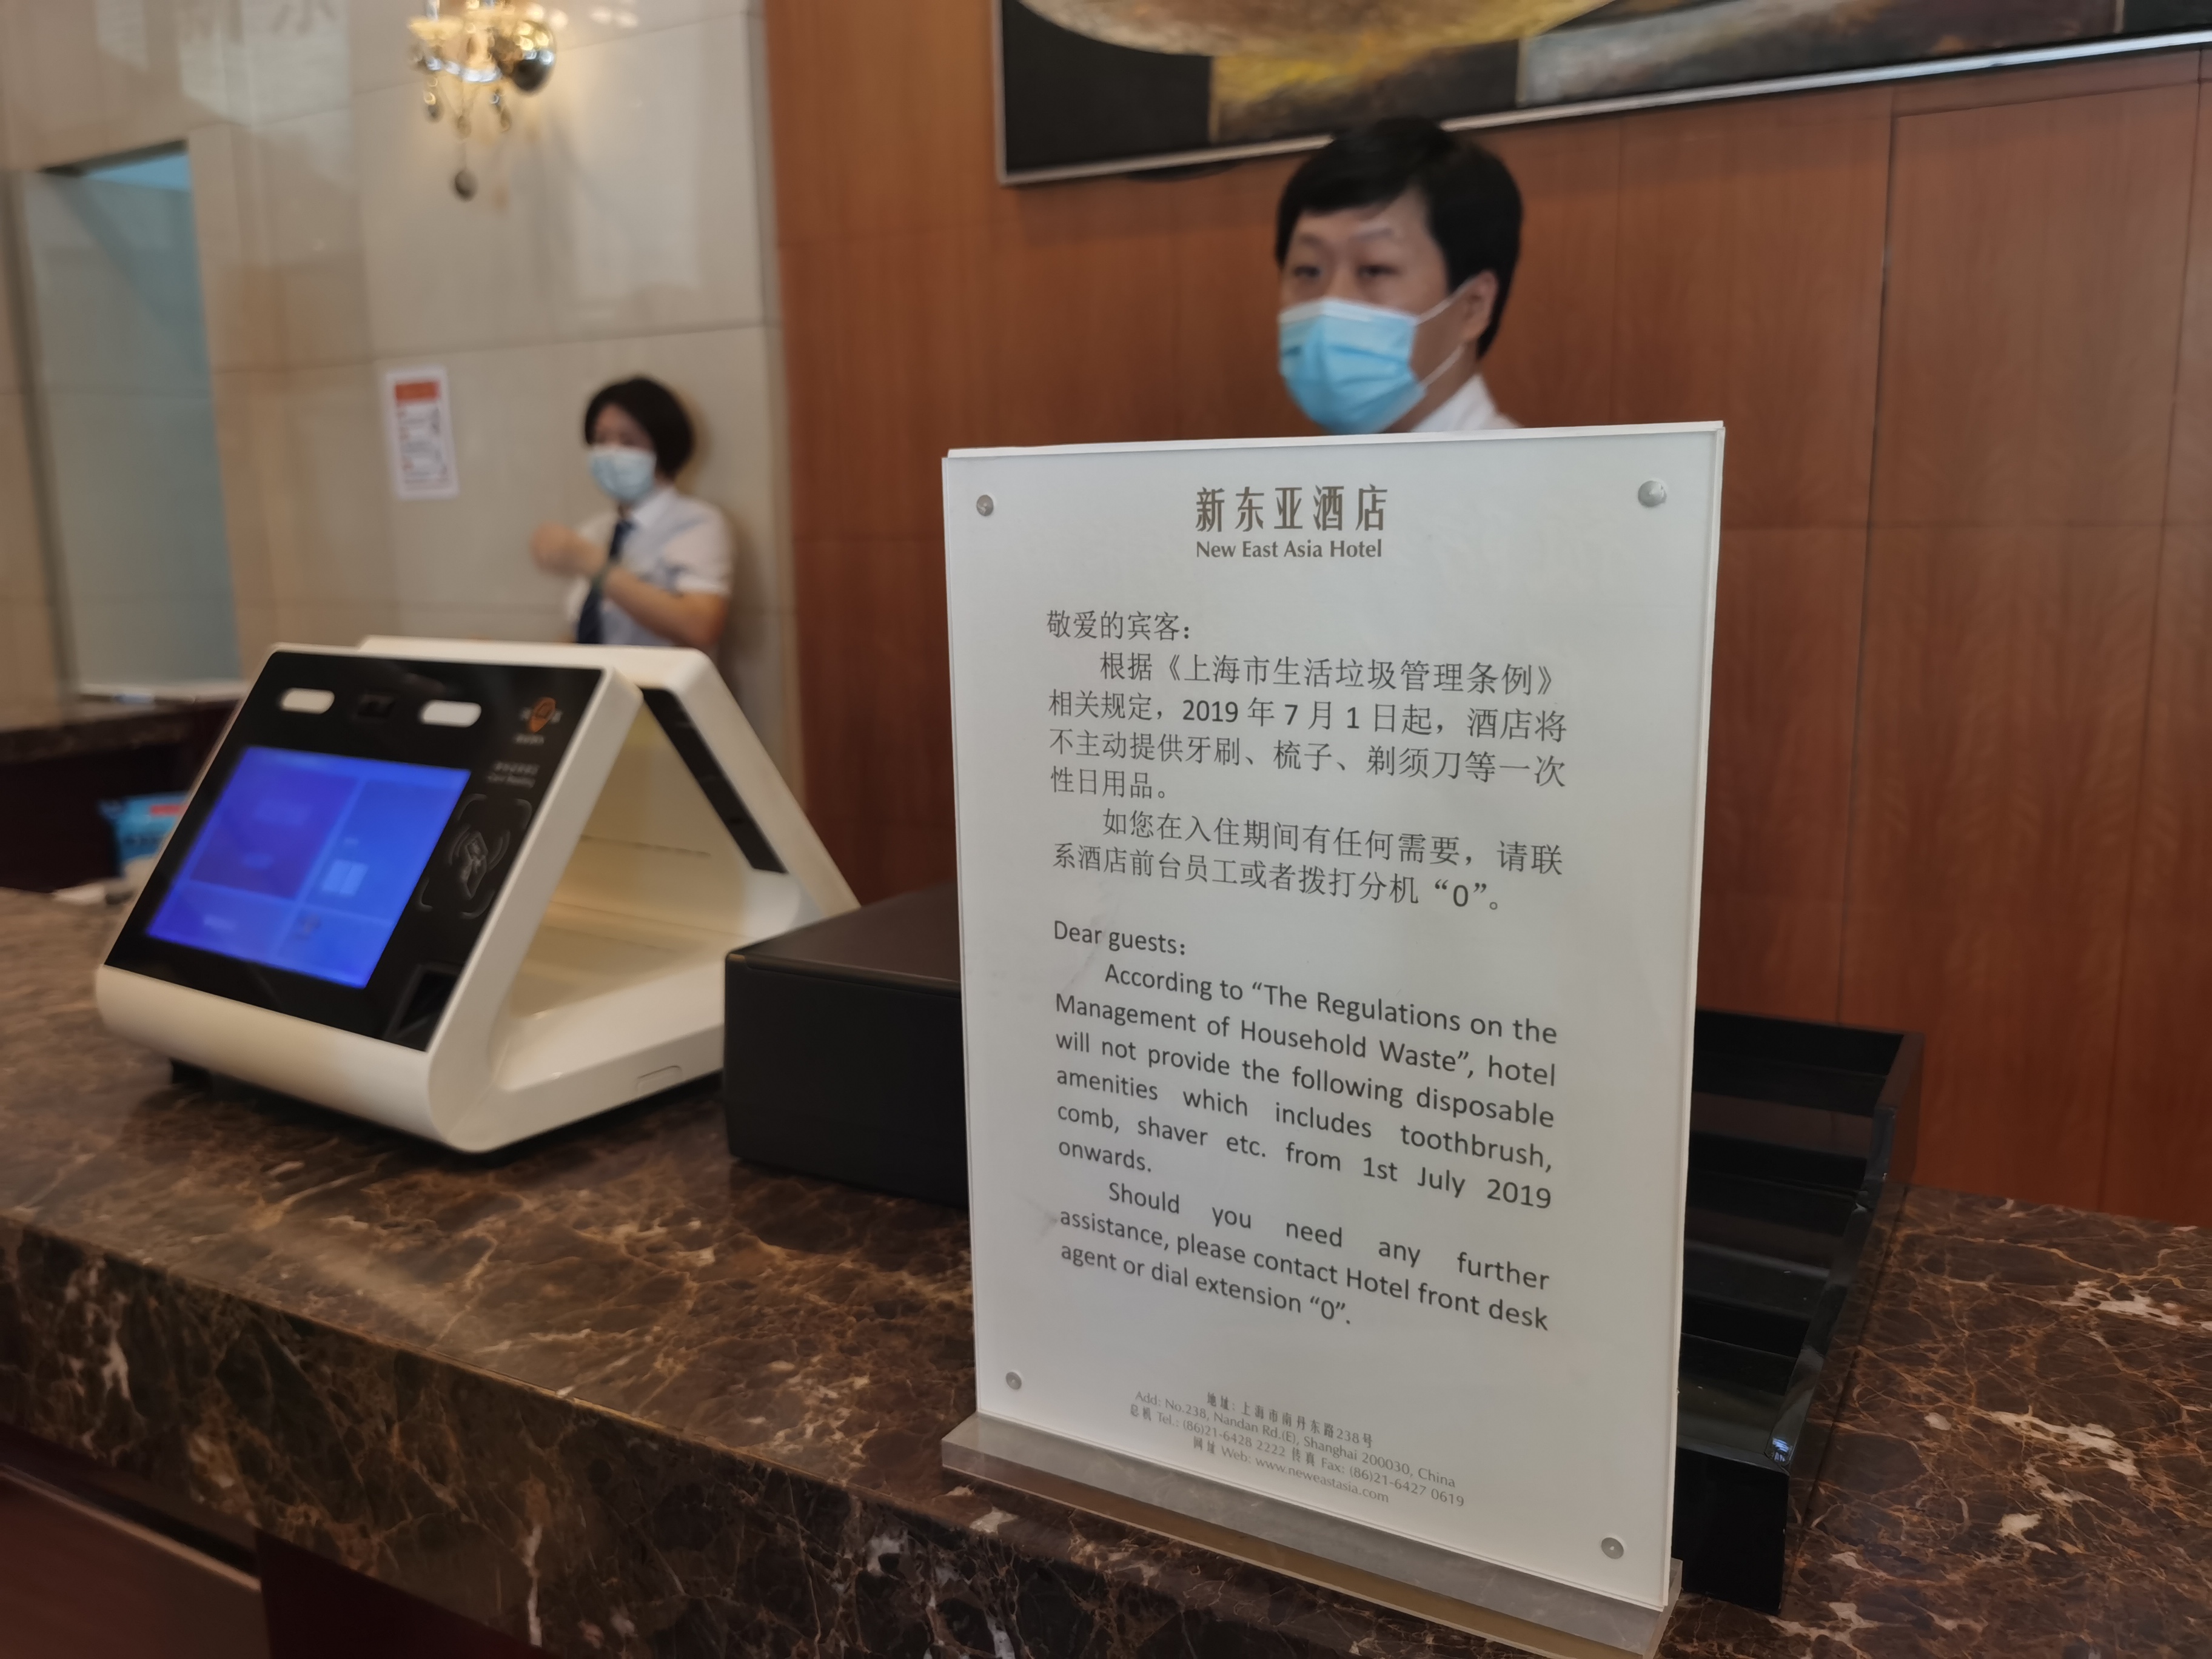 使い捨てアメニティーグッズ提供取りやめから1年 エコ消費の概念浸透 上海のホテル 写真2枚 国際ニュース Afpbb News